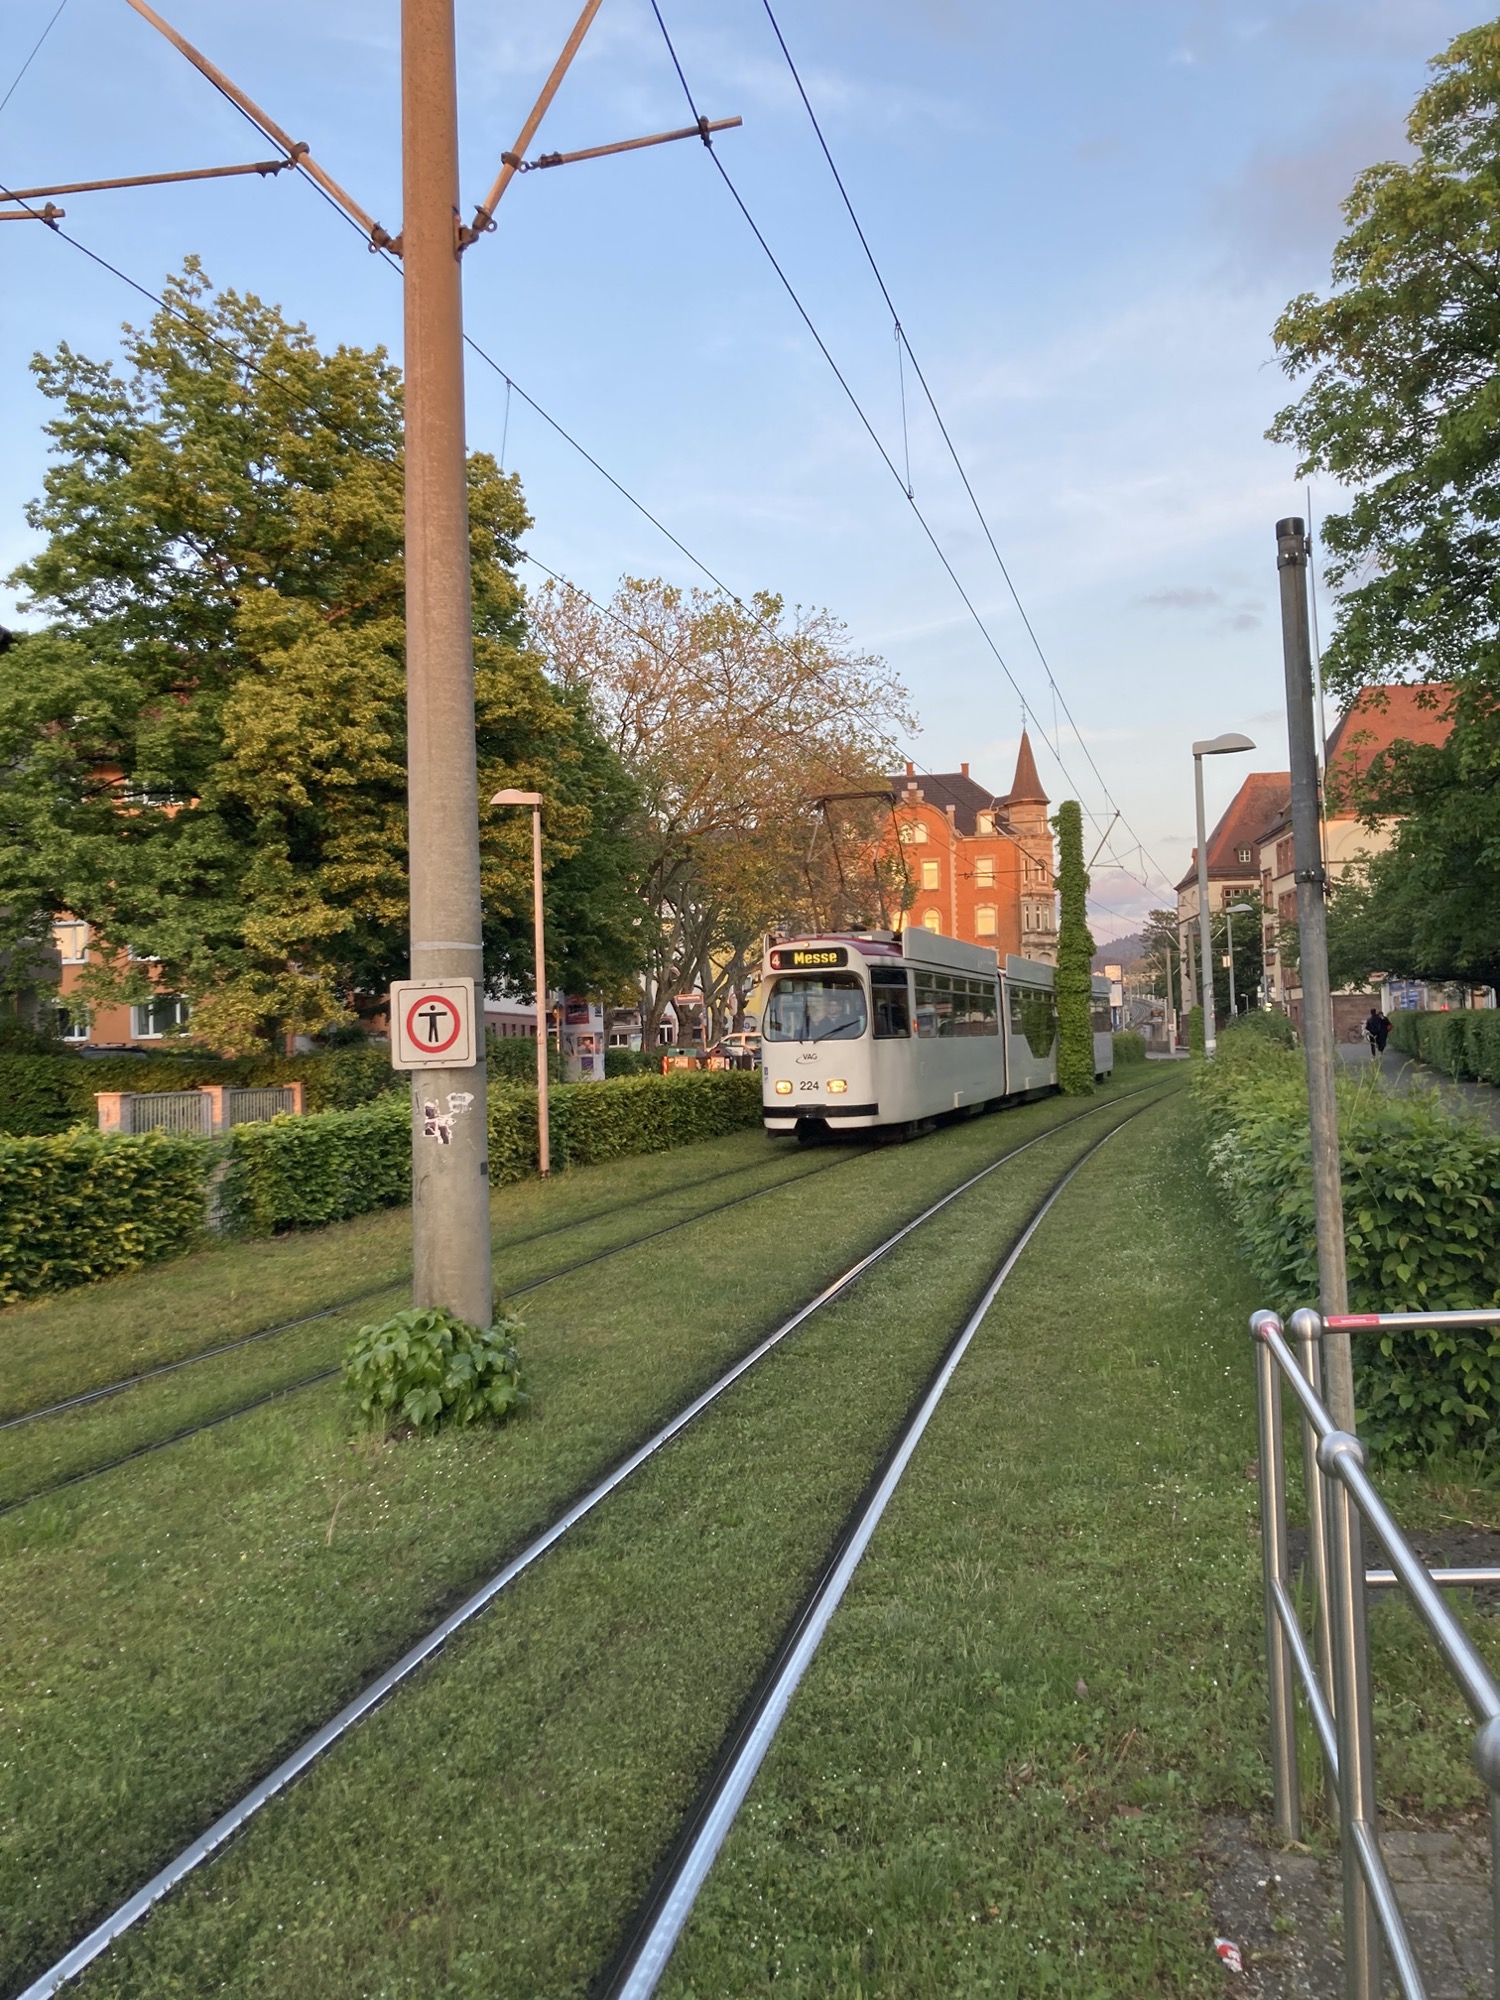 eine weiße Straßenbahn der Linie 4 Richtung Messe fährt auf die Fotografin zu, das Licht ist abendlich, zwischen den Gleisen wächst Gras (Rasengleis)